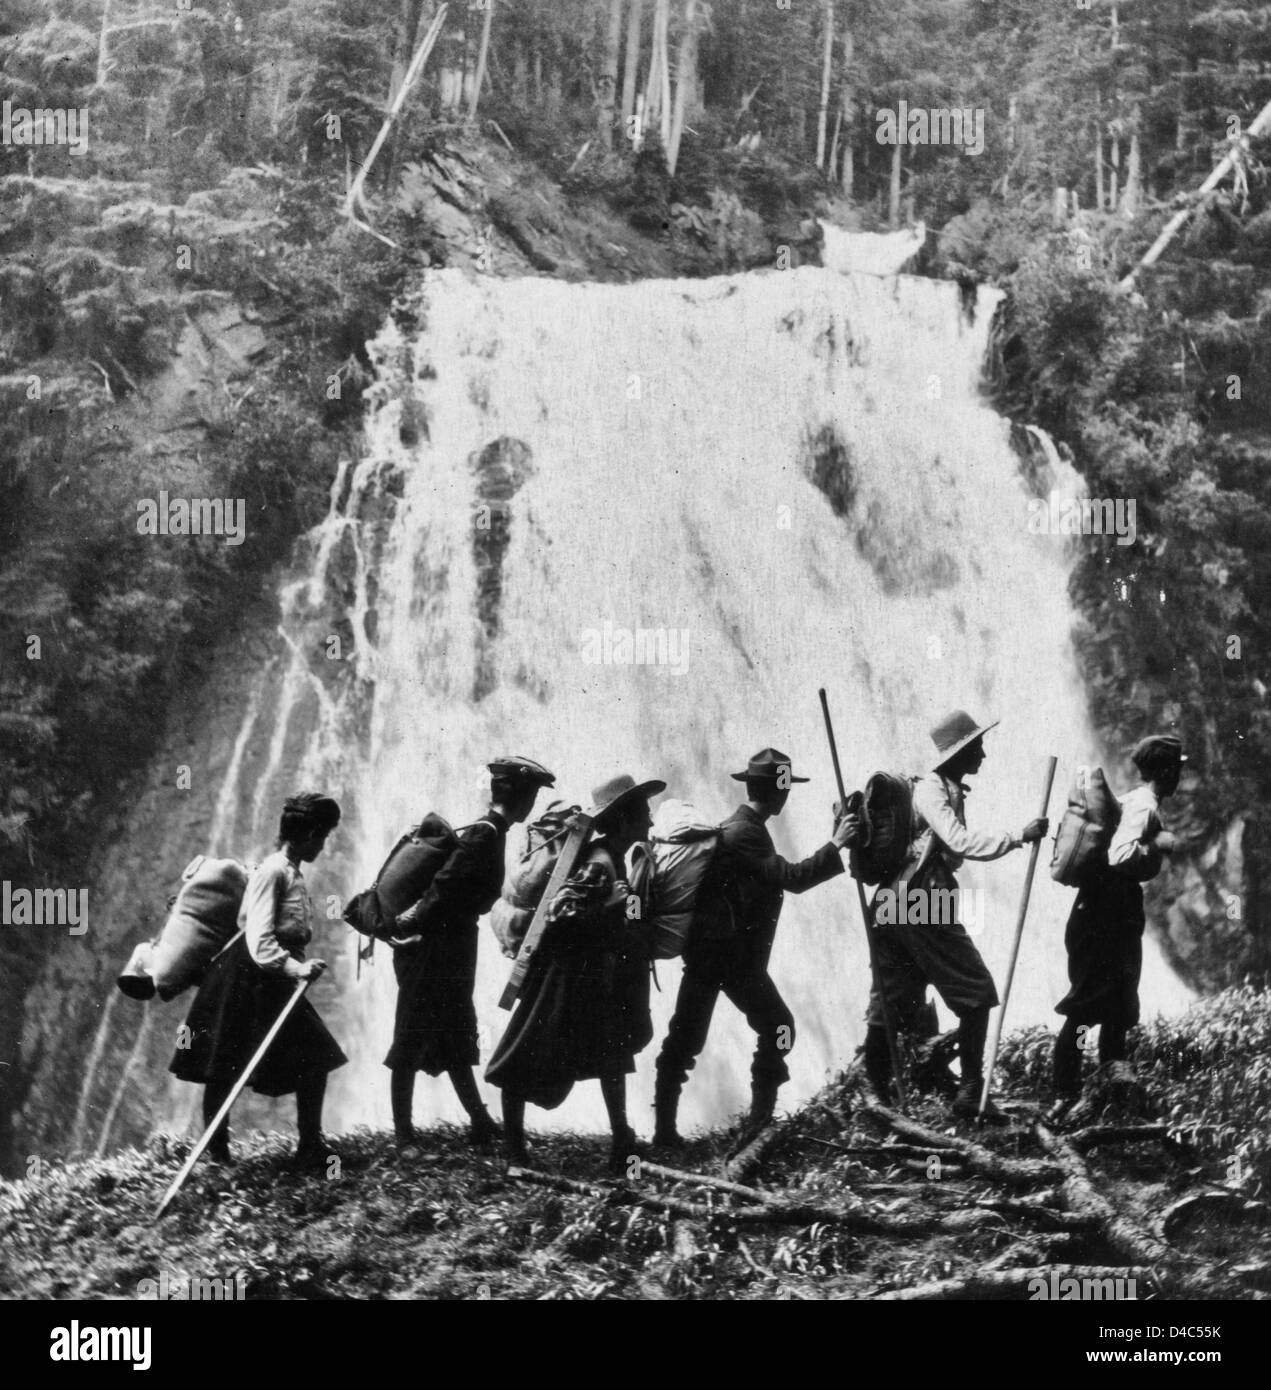 Sul sentiero per Paradise Valley, Mt. Tacoma o Ranieri, Washington. Un gruppo di escursionisti nei pressi di una cascata nella catena della Cascade, circa 1906 Foto Stock